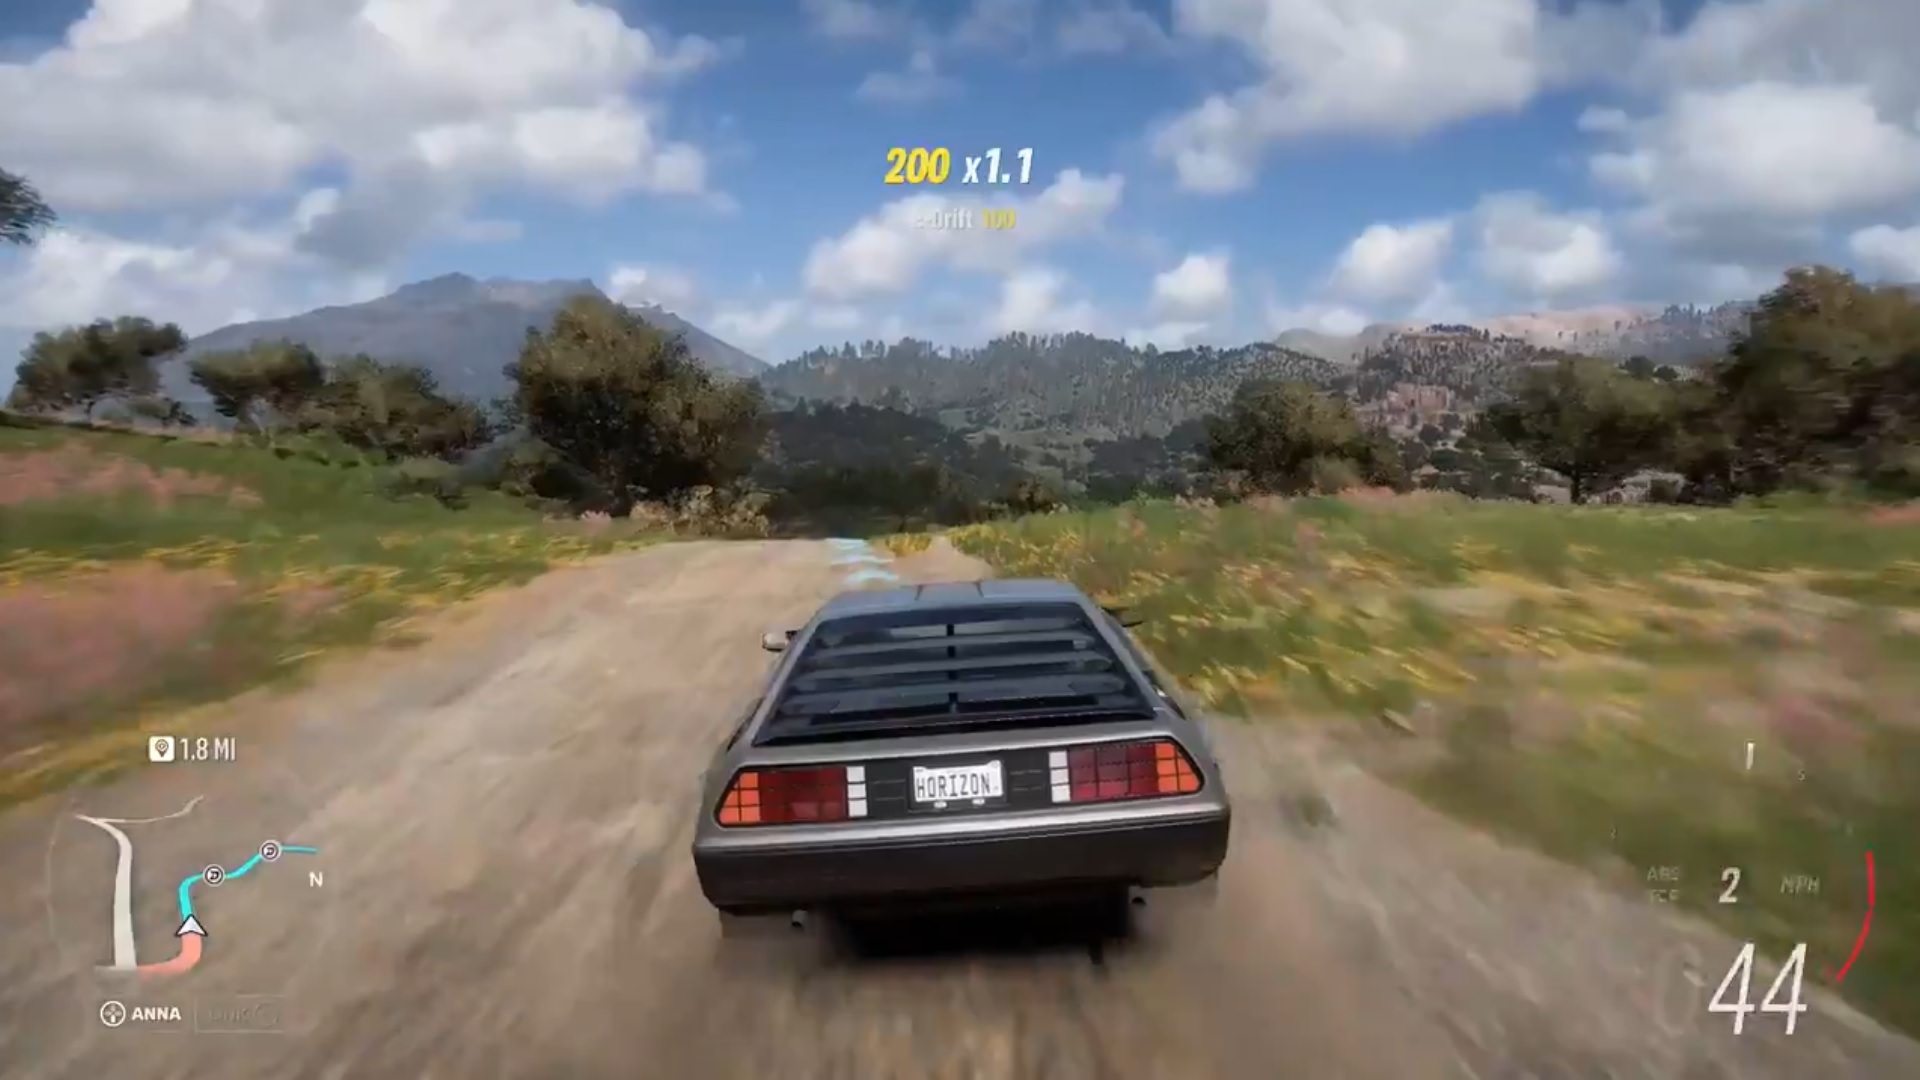 حضور ماشین فیلم بازگشت به آینده در بازی Forza Horizon 5